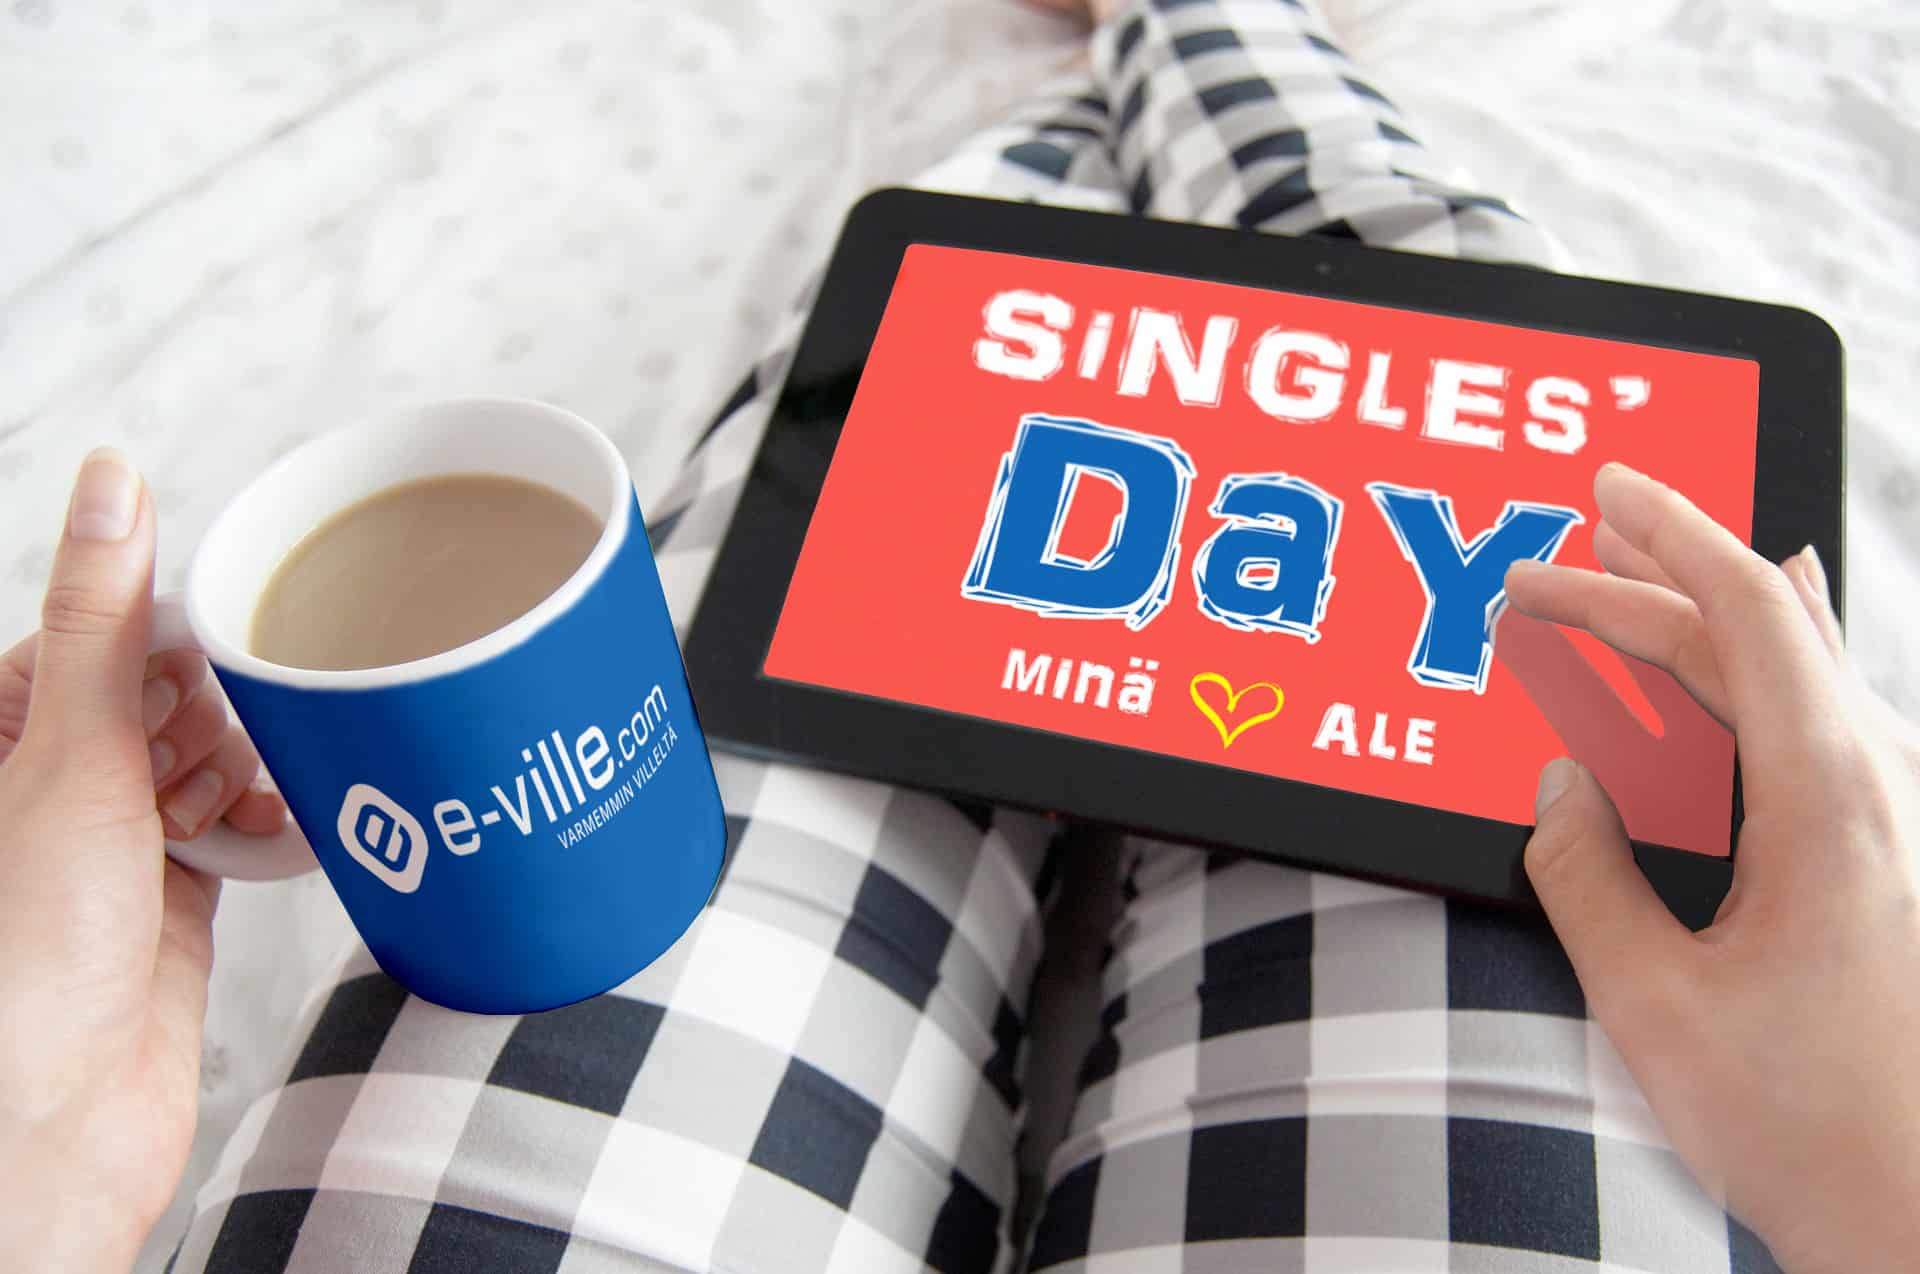 e-villen Singles' Day on jo käynnissä!